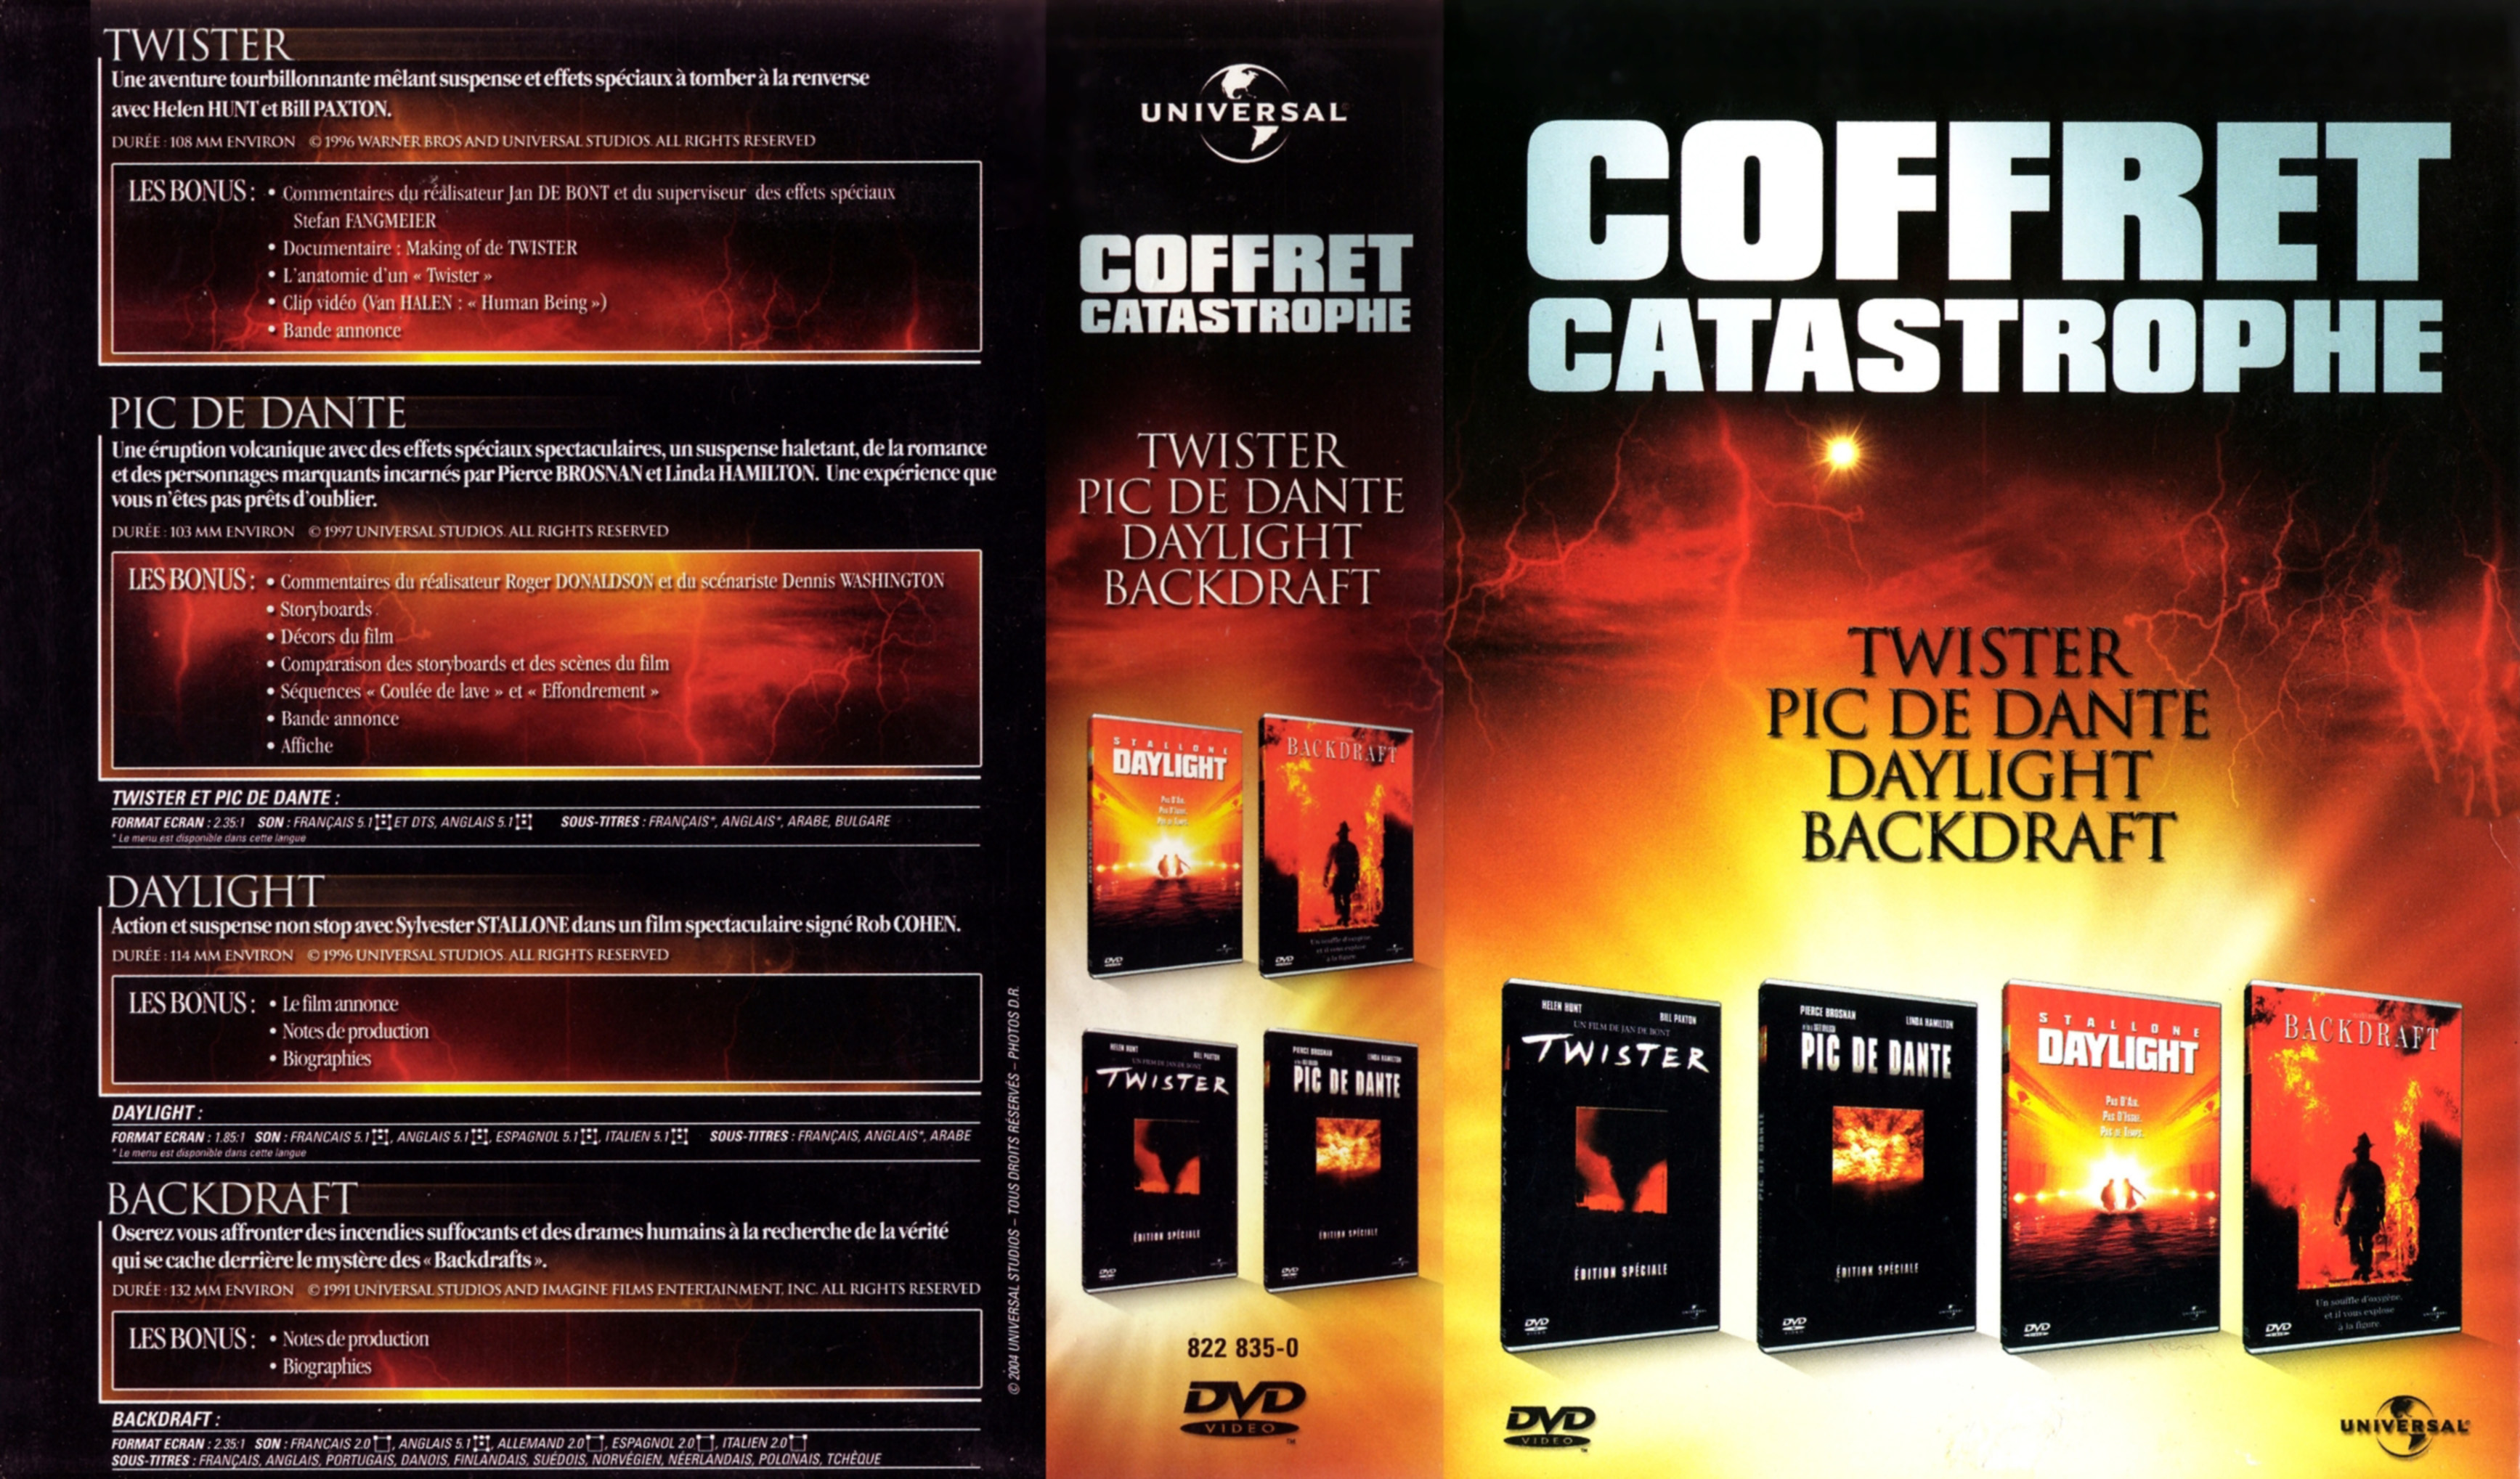 Jaquette DVD Twister + Pic de Dante + Daylight + Backdraft COFFRET